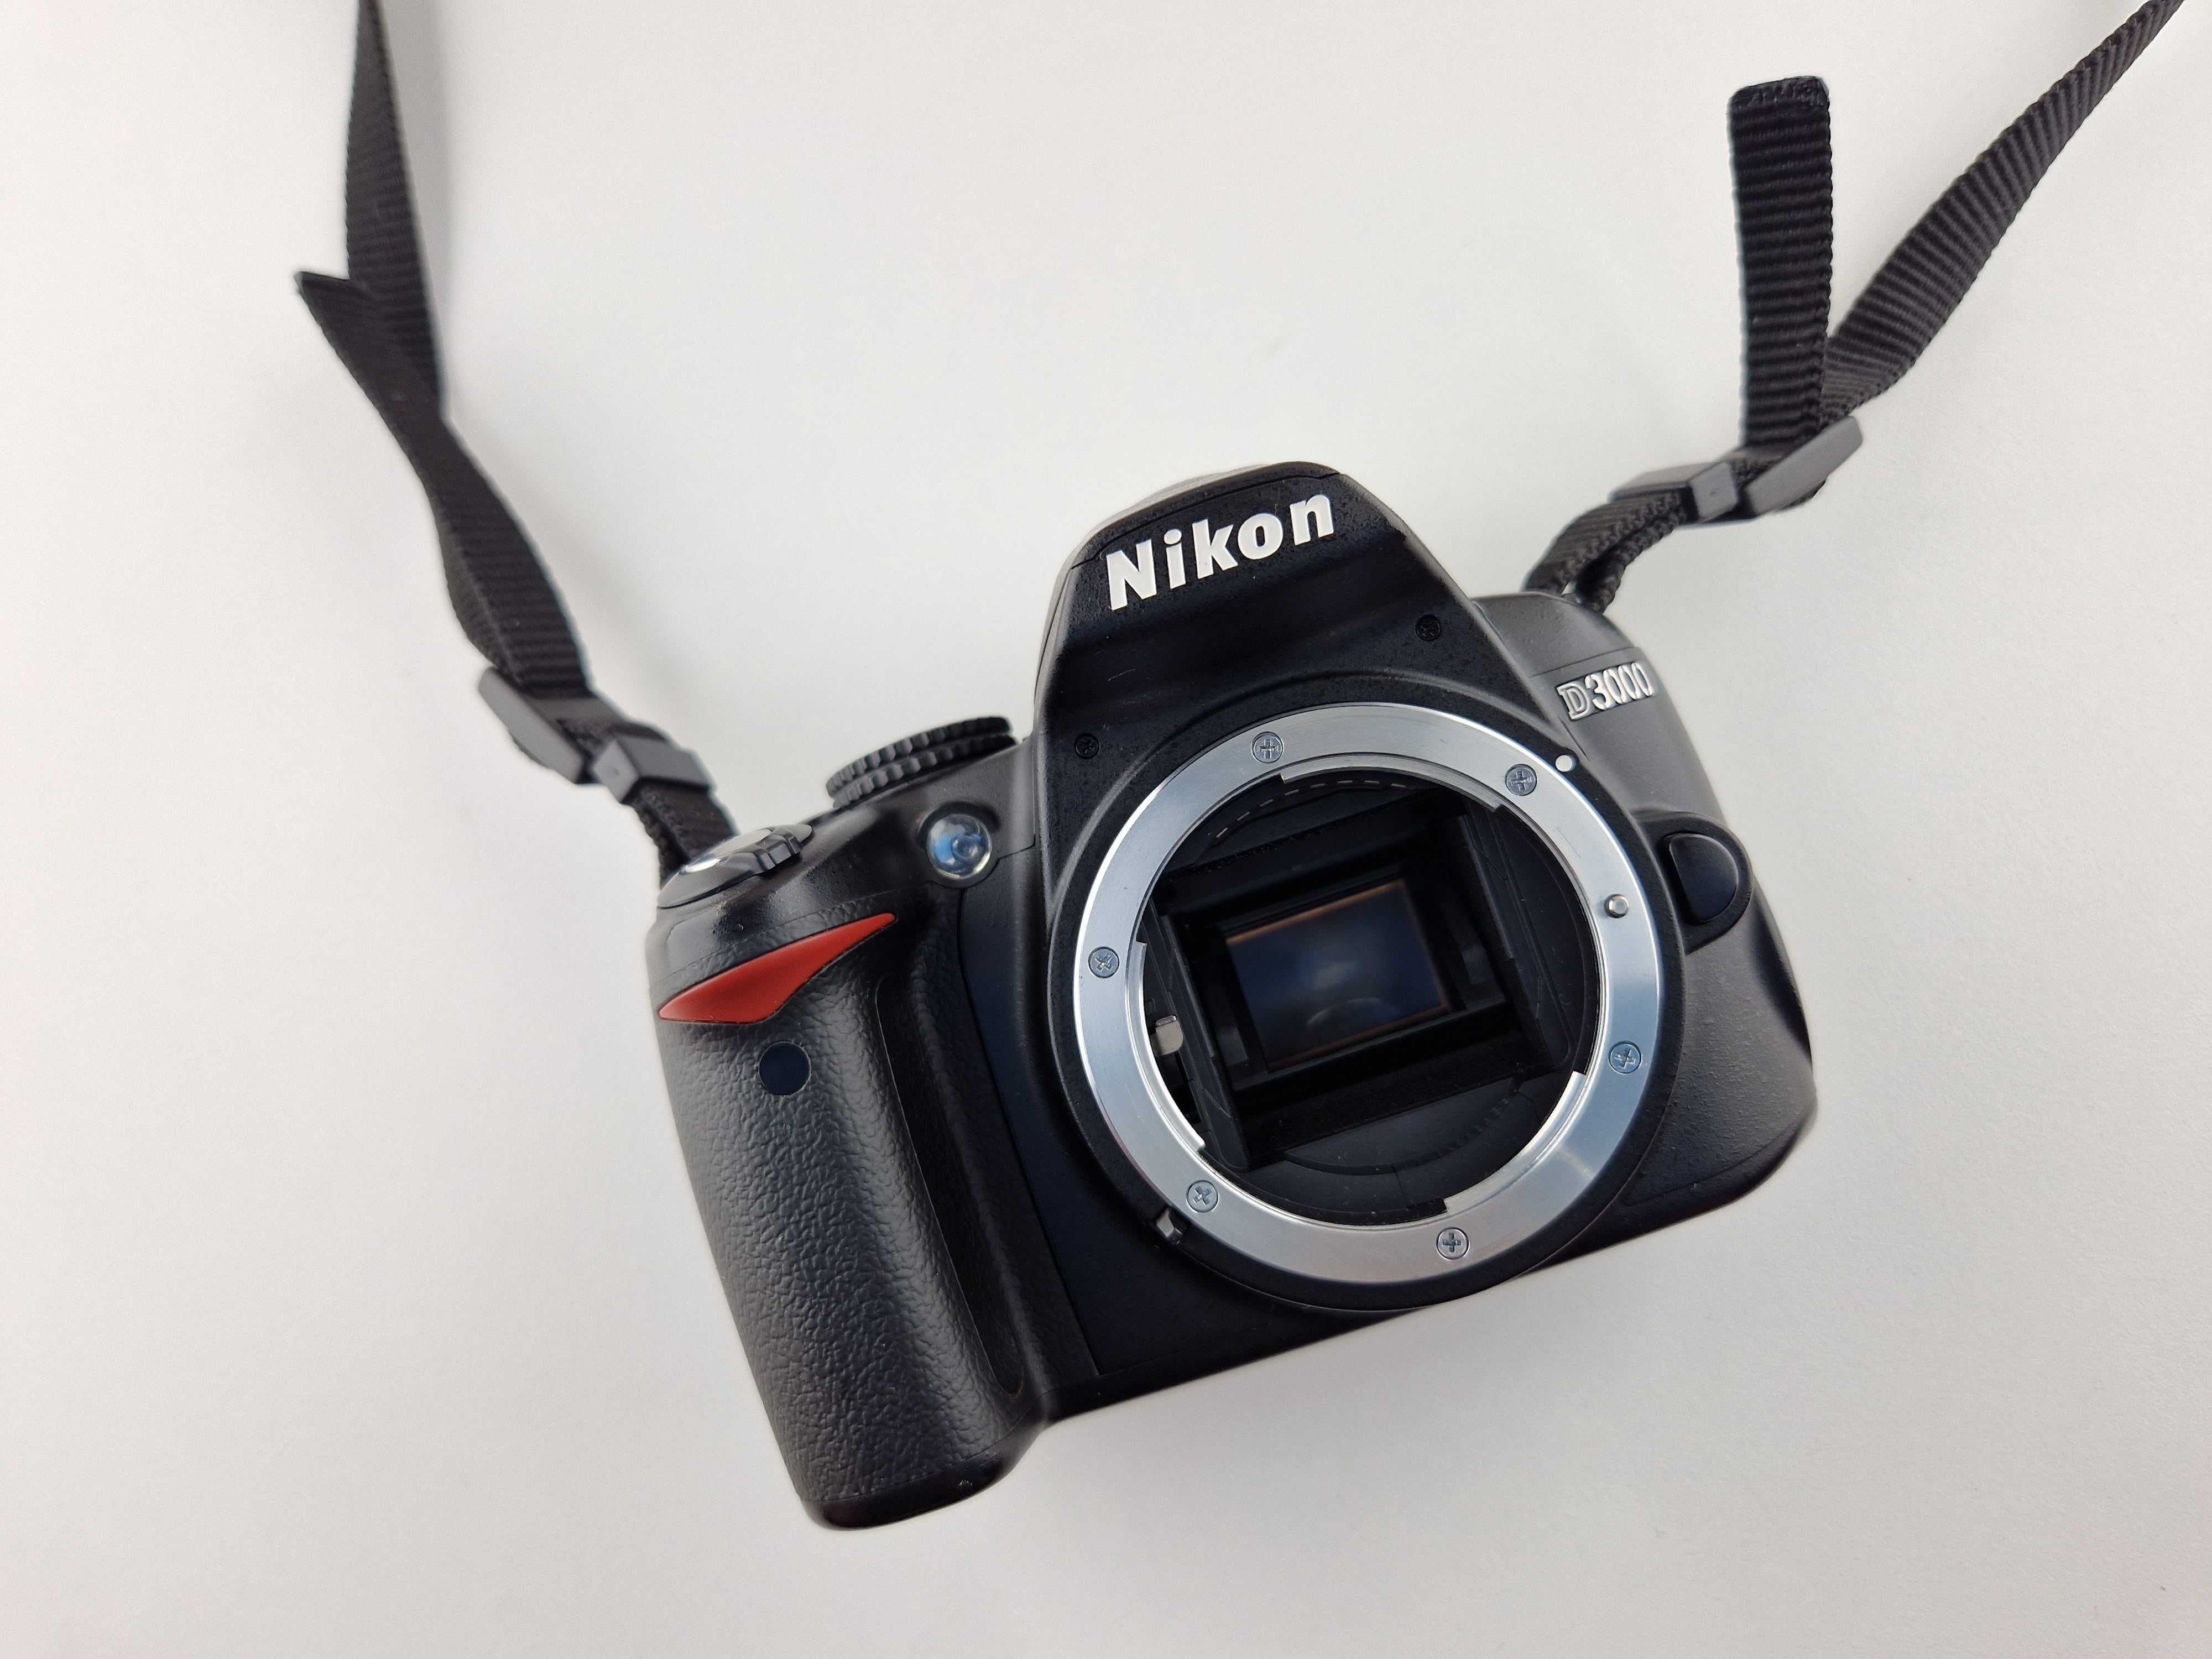 .Aparat Nikon D3000 body + karta 8GB - 11.612 zdjęć - jak nowy!